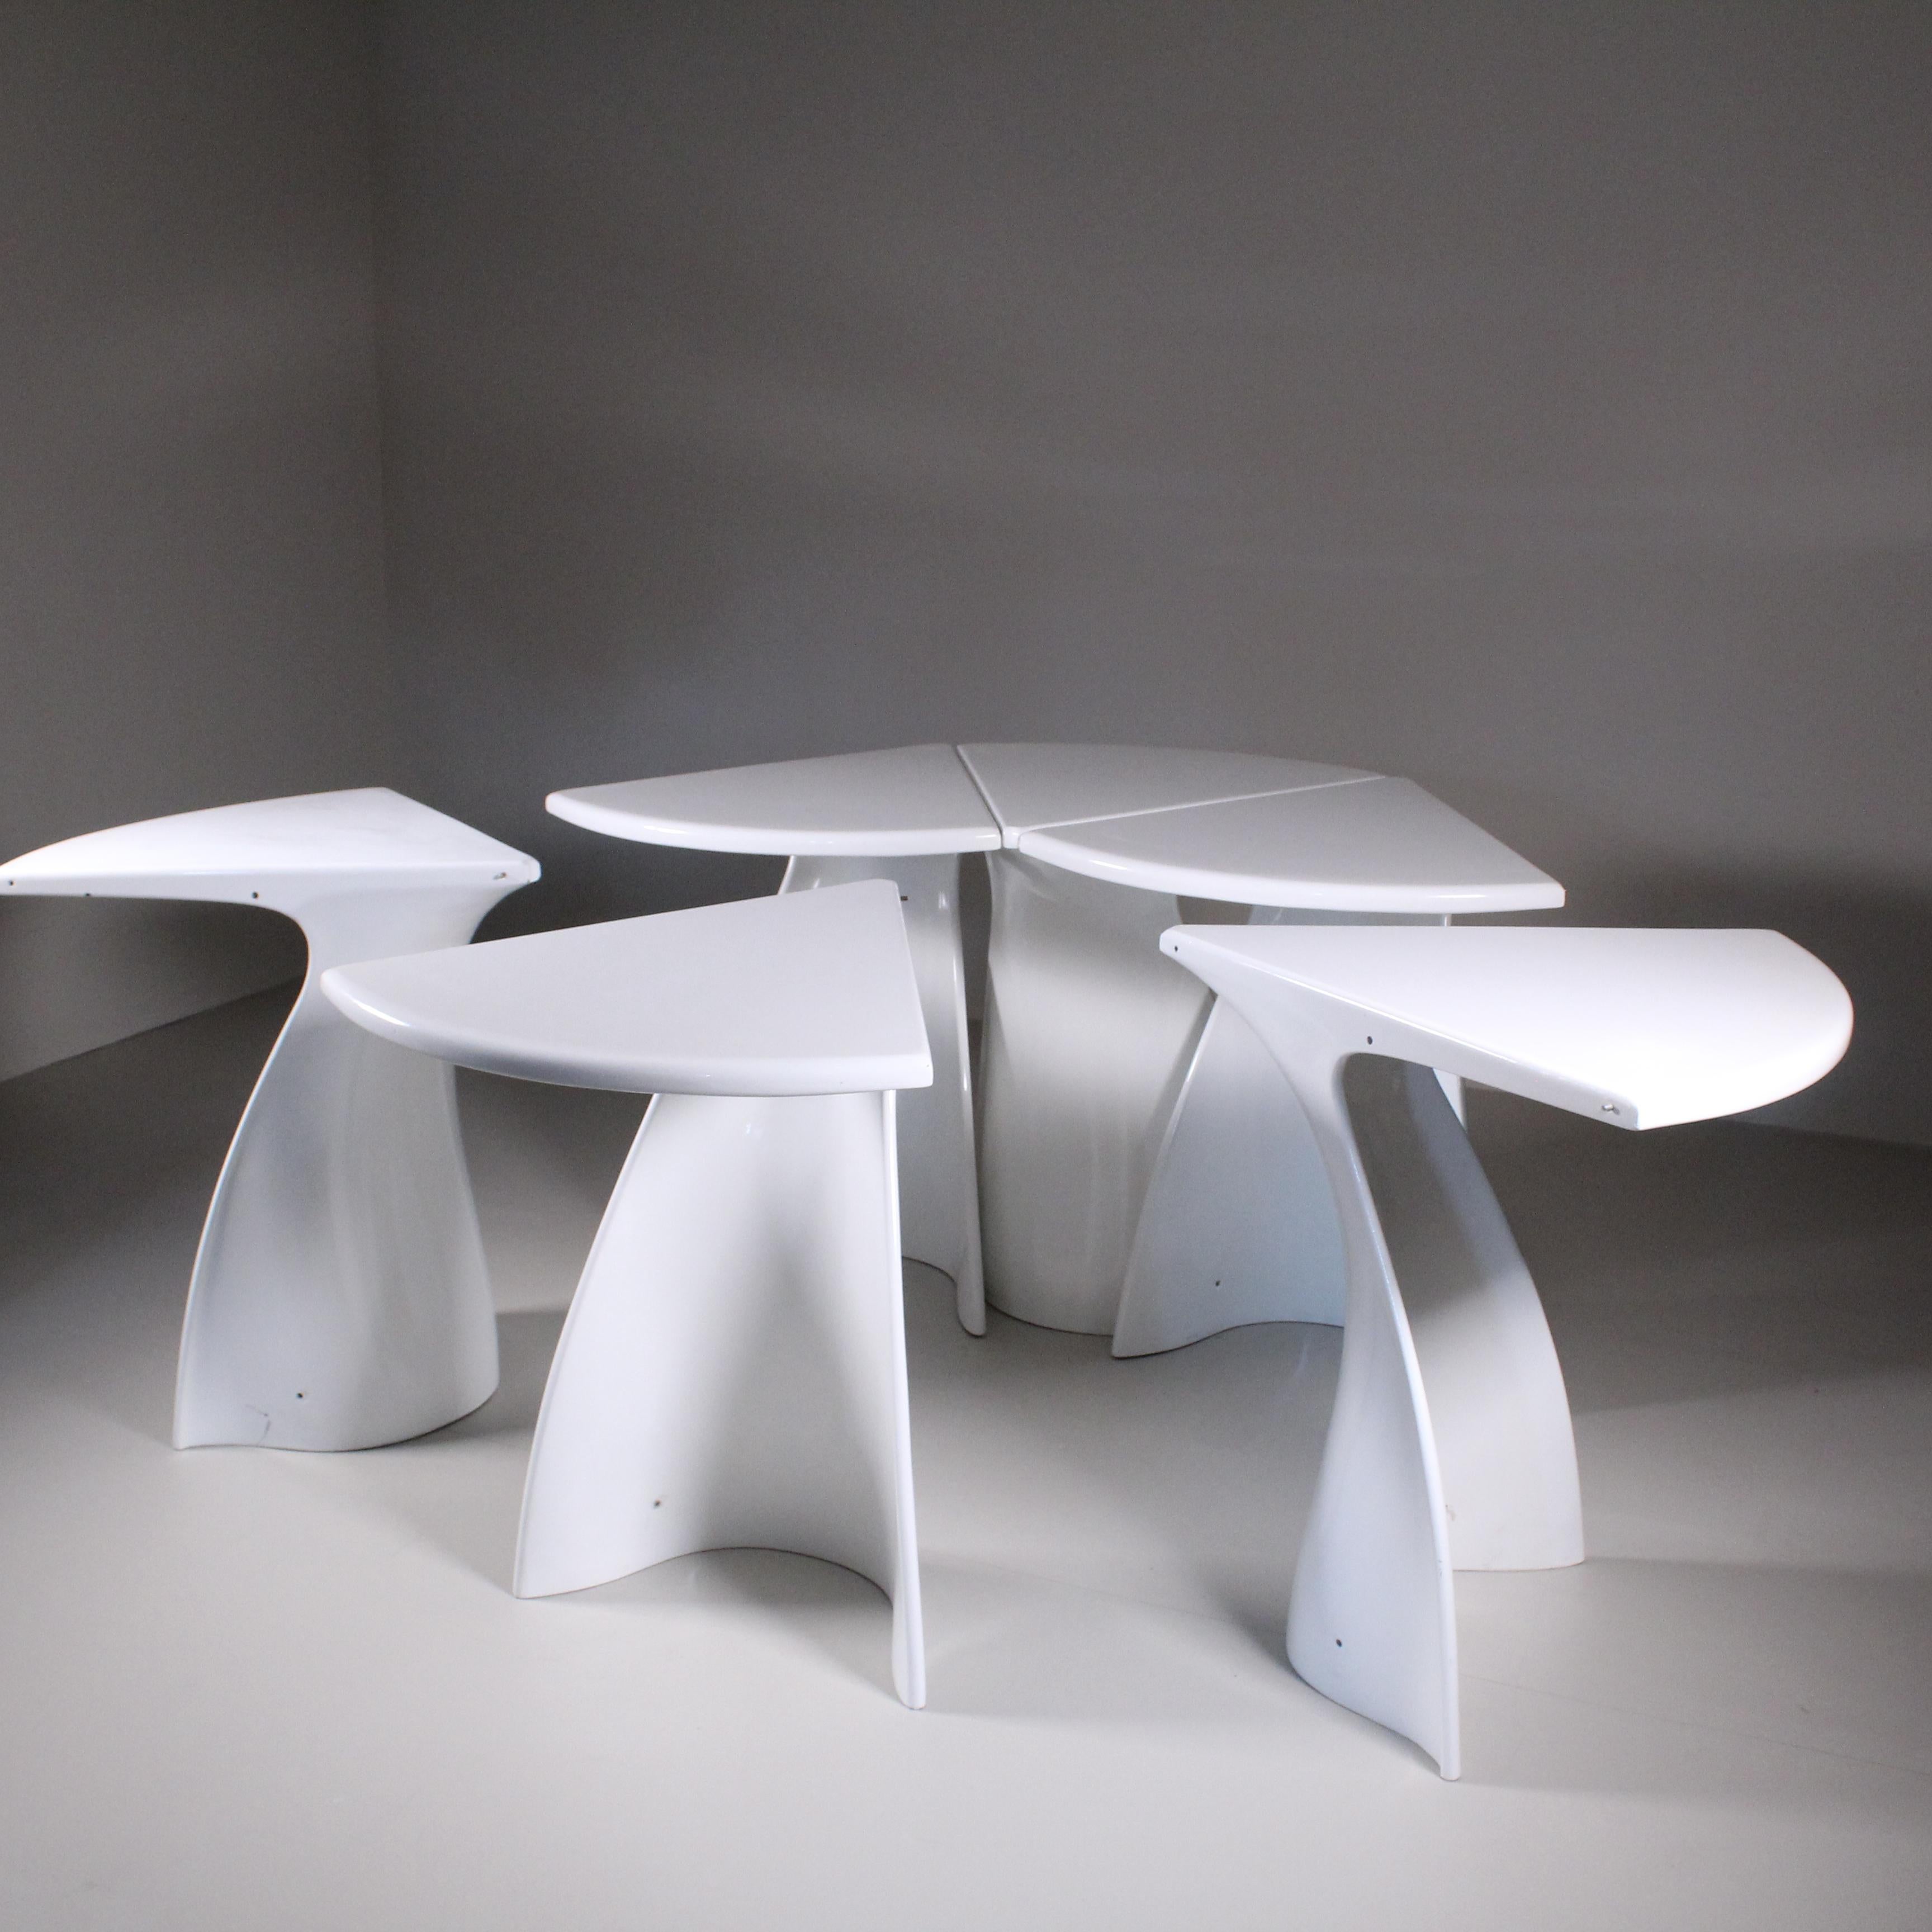 Die Stärke dieses Tisches ist seine Modularität. Fabio Lenci hat den Tisch so entworfen, dass seine Teile je nach den Bedürfnissen des Raums und des Benutzers leicht angepasst und kombiniert werden können. Dank dieser Vielseitigkeit passt sich der